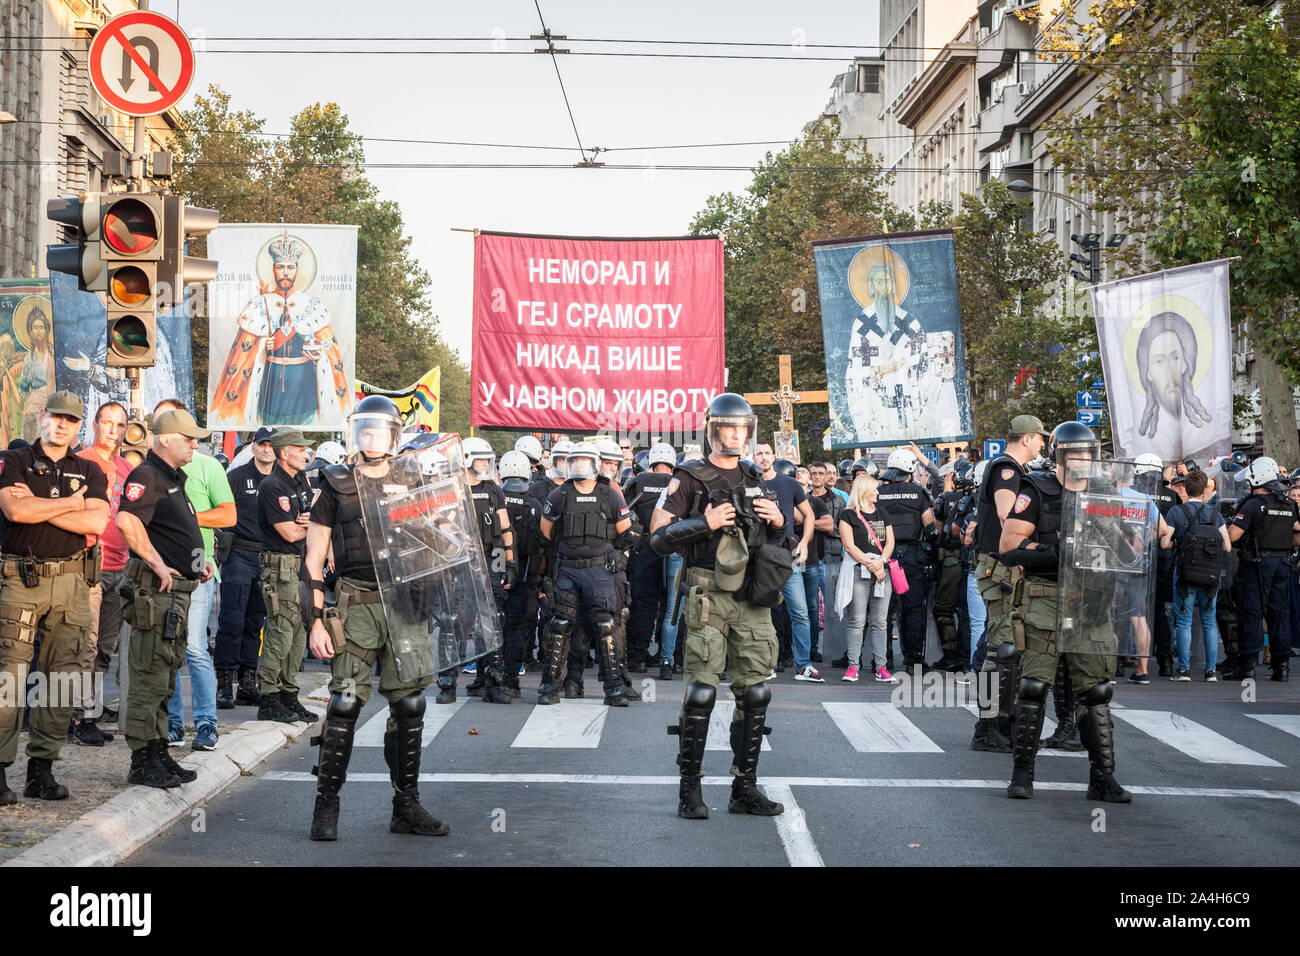 Belgrad, SERBIEN - September 15, 2019: Anti-homosexuelle Demonstranten vom orthodoxen Extremisten und ganz rechts an einer Demonstration gegen die Gay Pride halten Bann Stockfoto